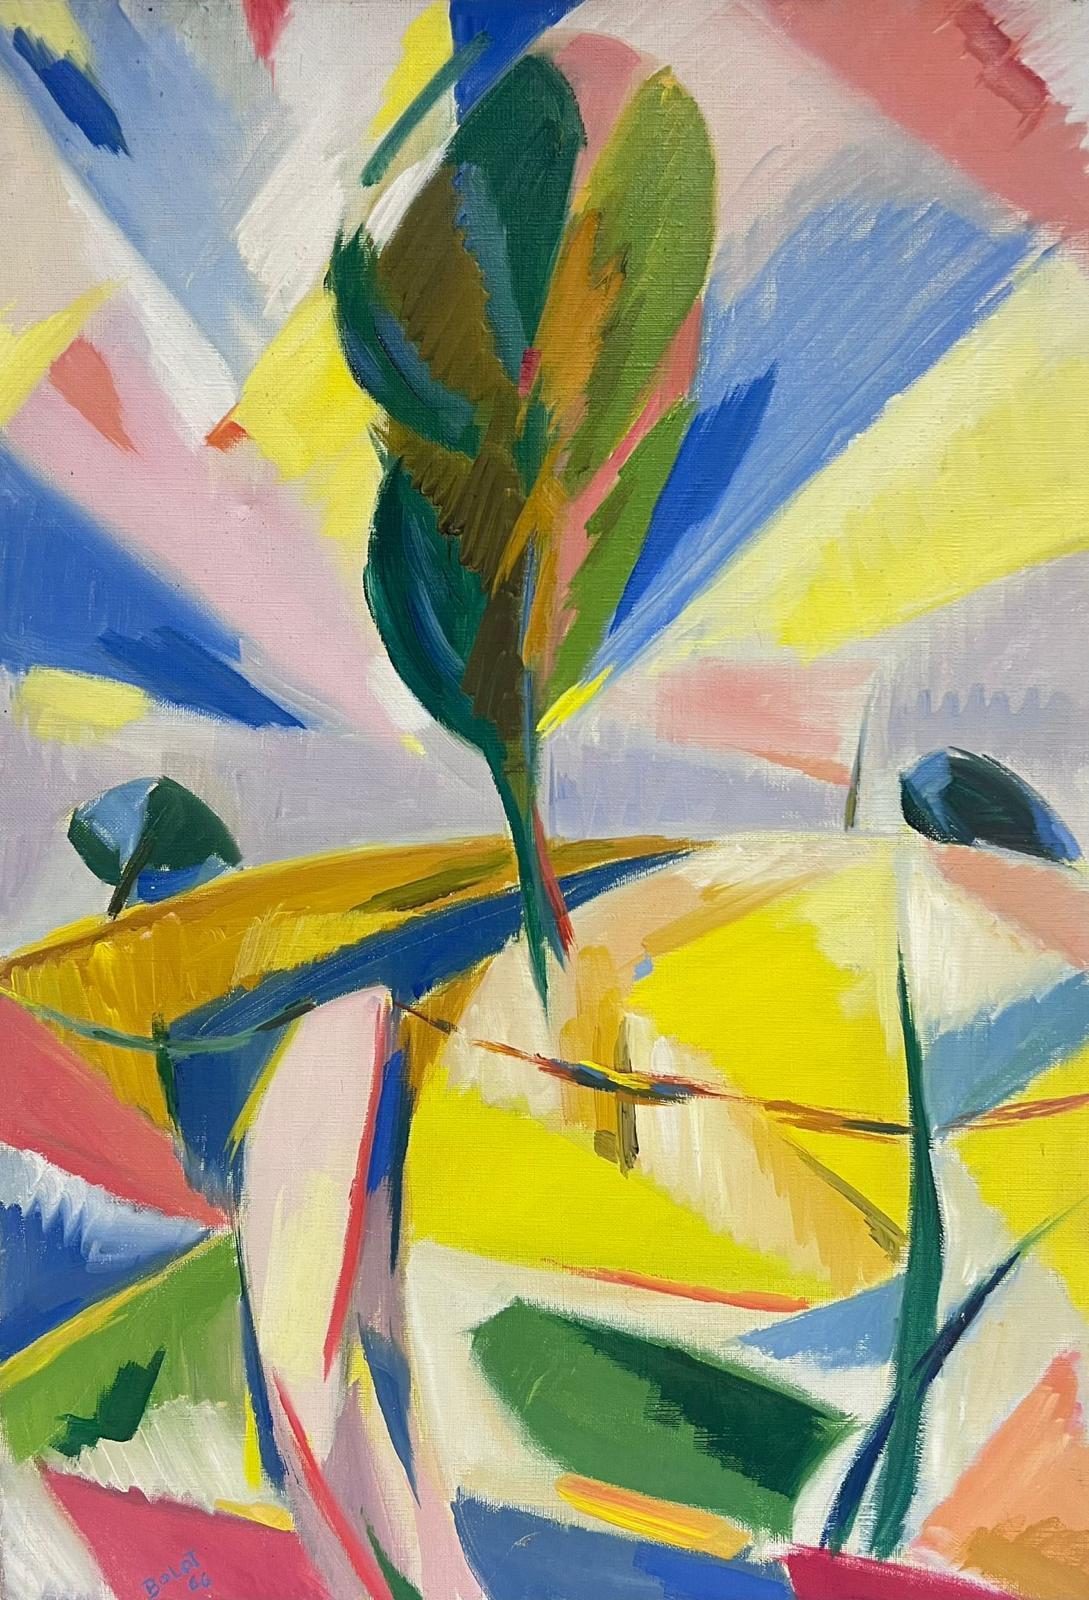 Paul-Louis Bolot (French 1918-2003) Landscape Painting – 1960's Französisch kubistische Ölgemälde Helle Landschaft mit Baum Erstaunliche Farben